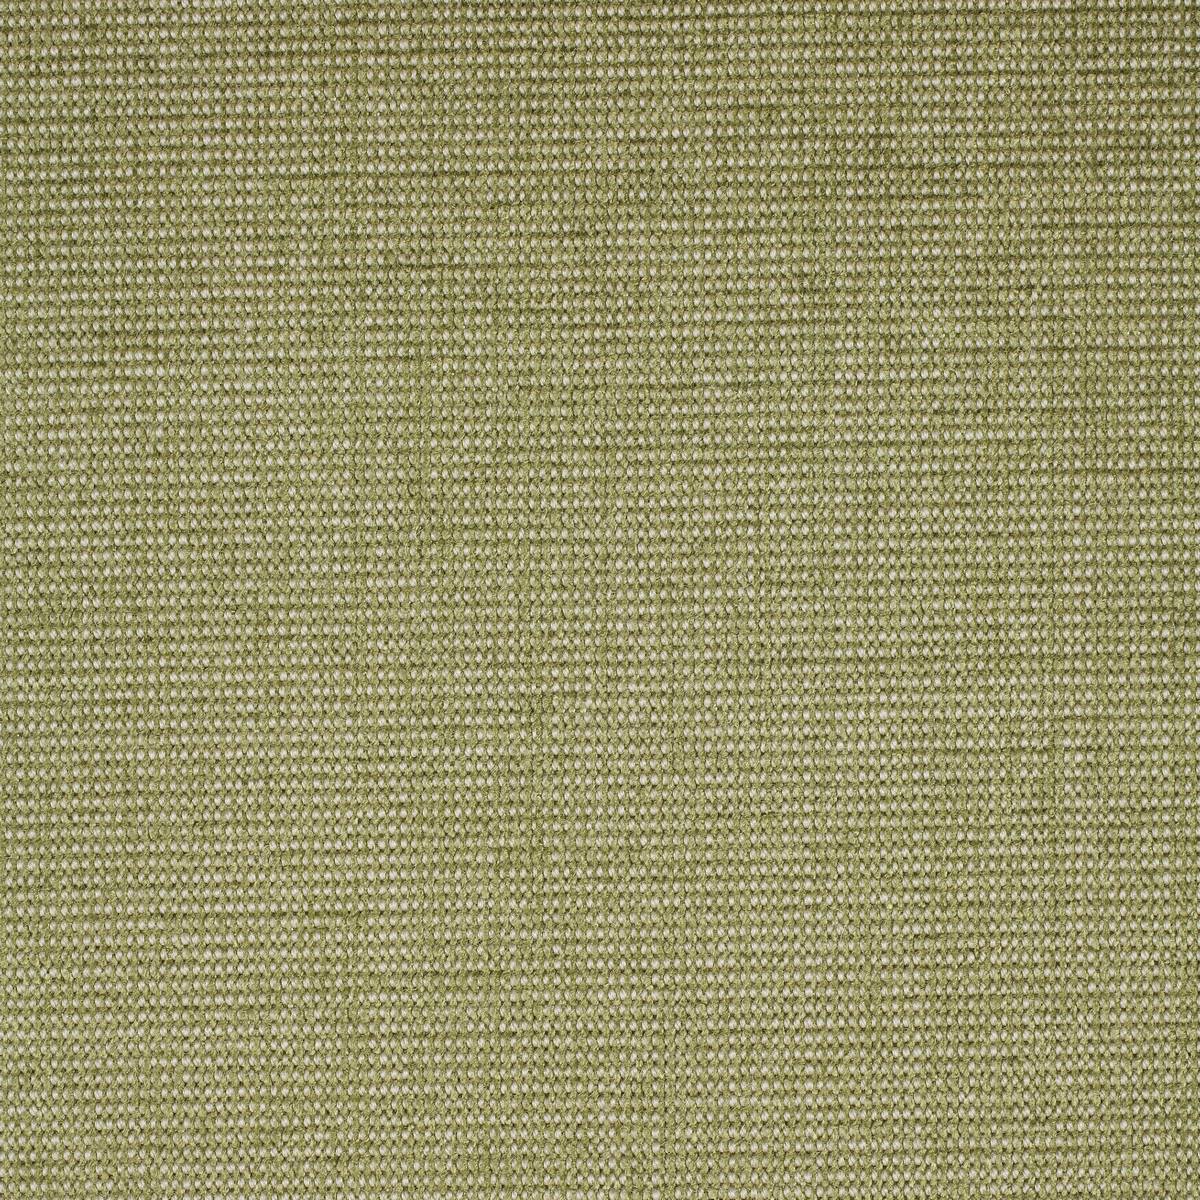 Corbett Leaf Fabric by Zoffany